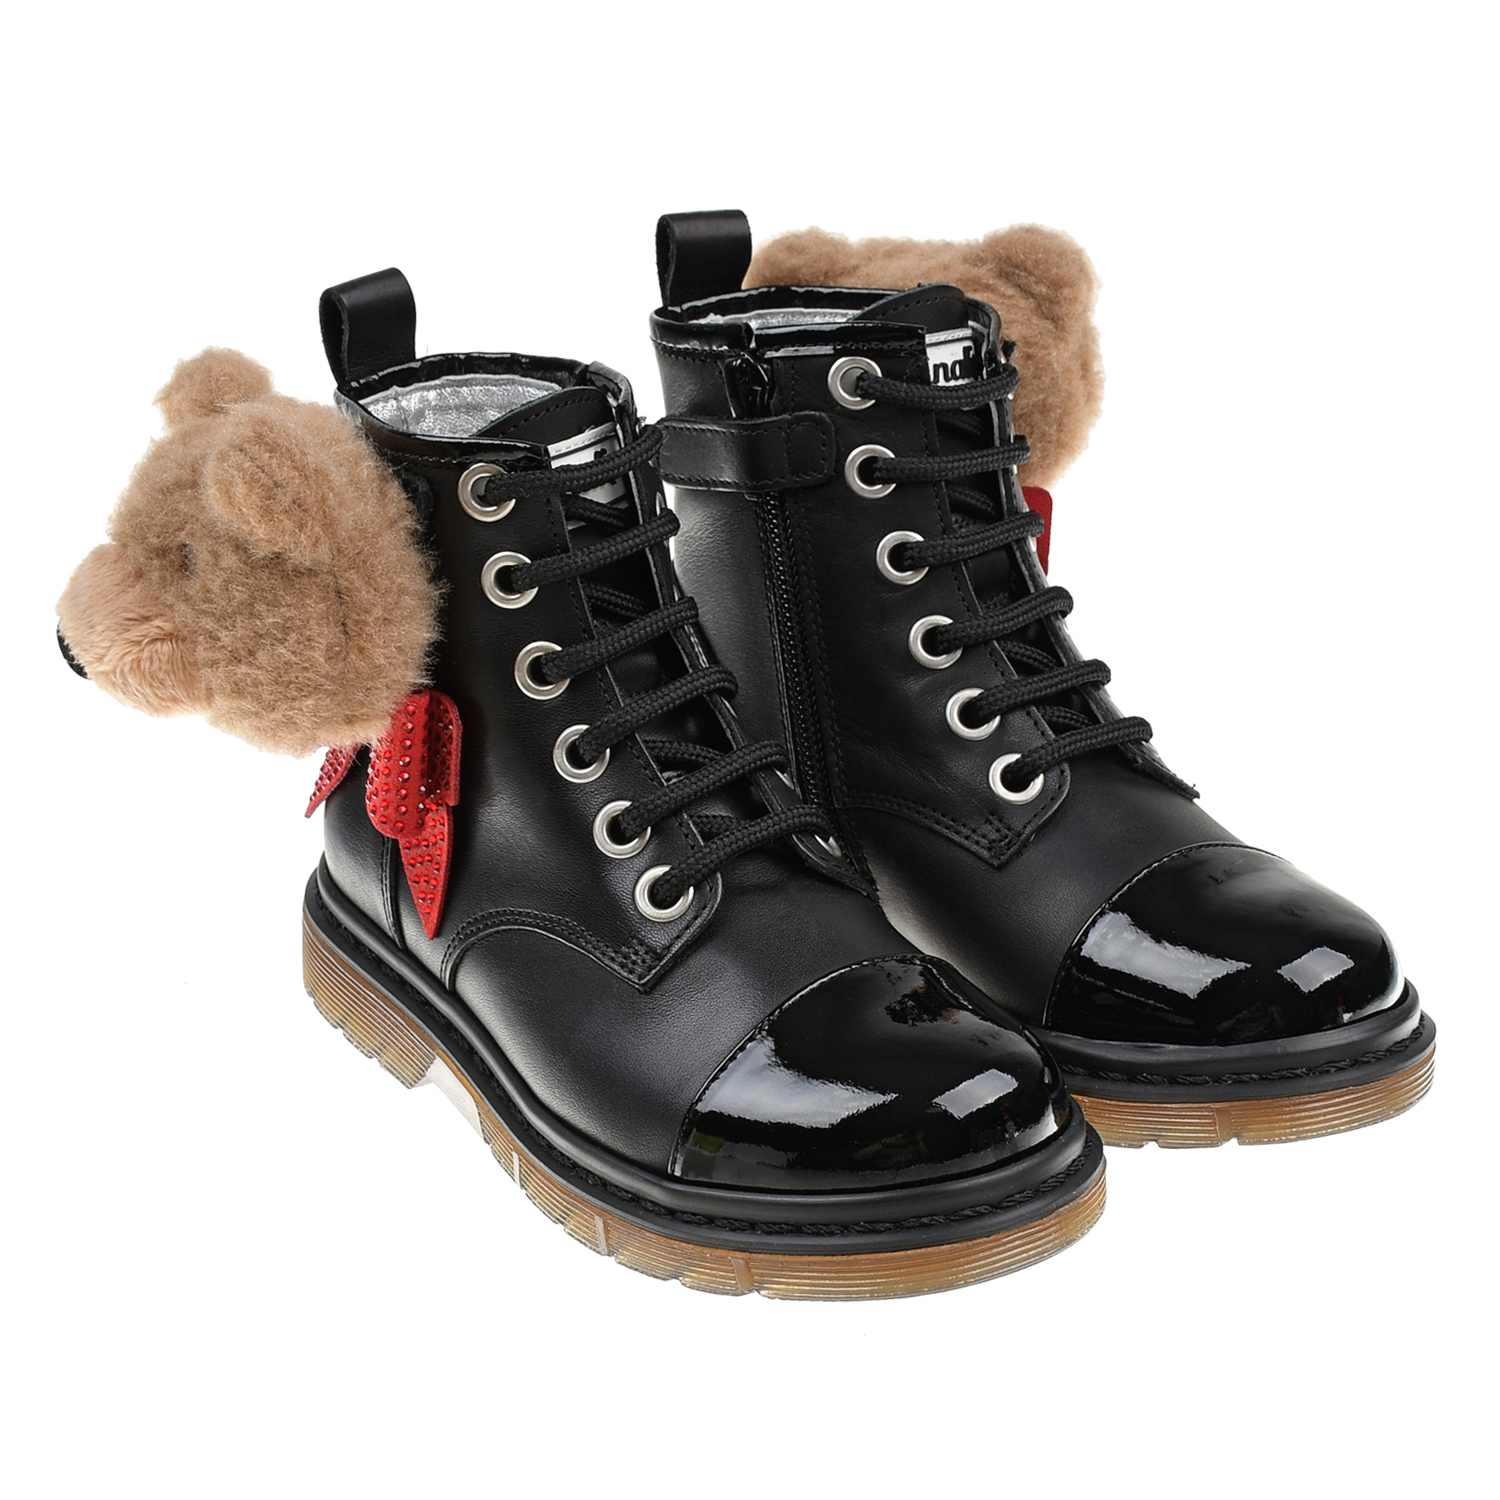 Кожаные ботинки с аппликацией "медвежонок" Monnalisa детские, размер 26, цвет черный - фото 1